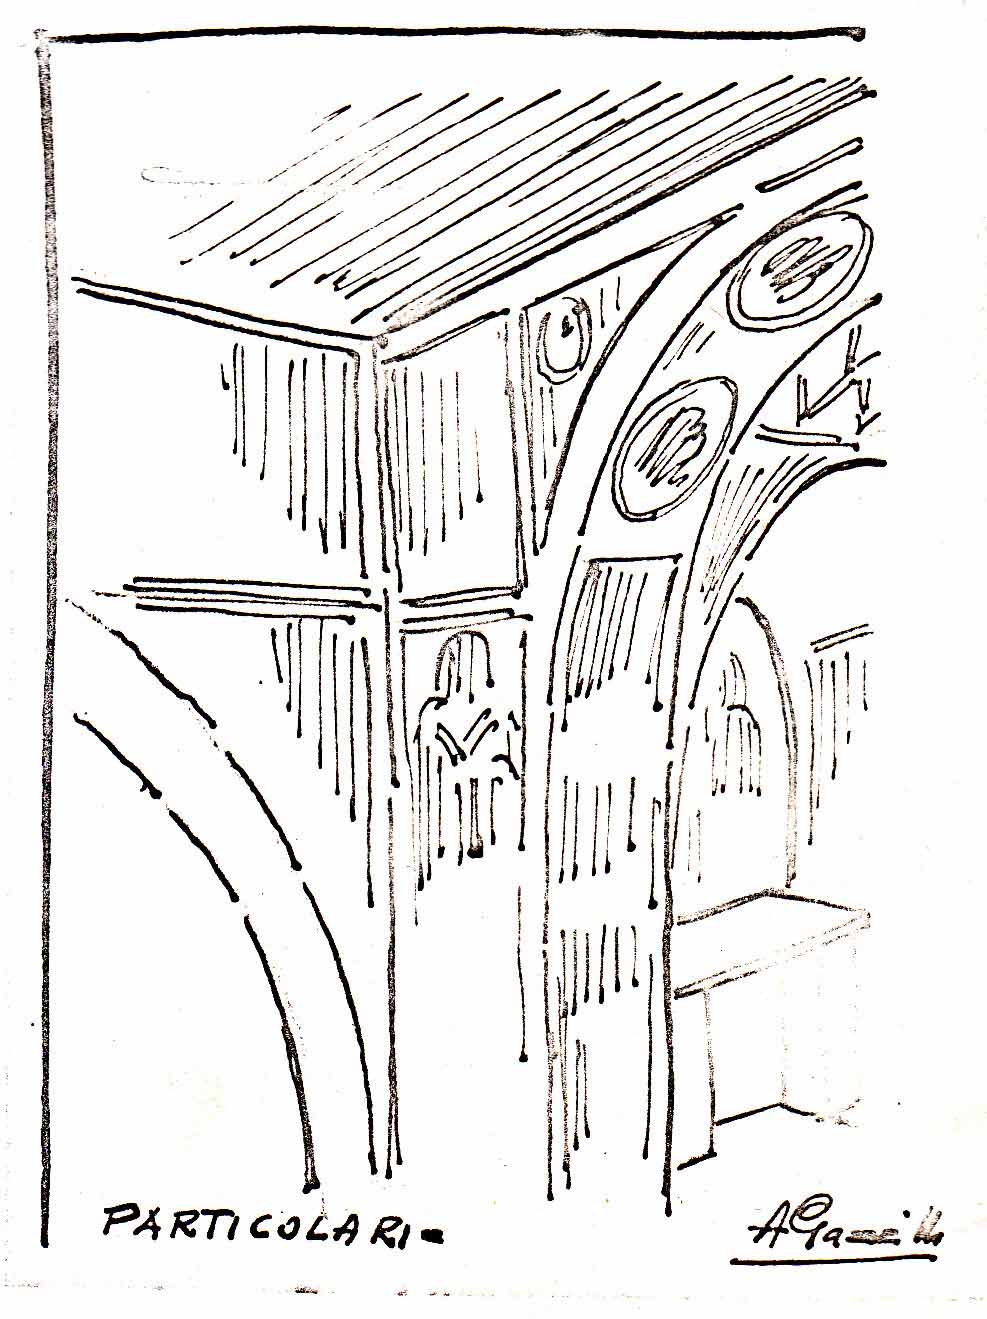 Pilastro destro dell'arco trionfale, schizzo di G.Gazzilli, 1968